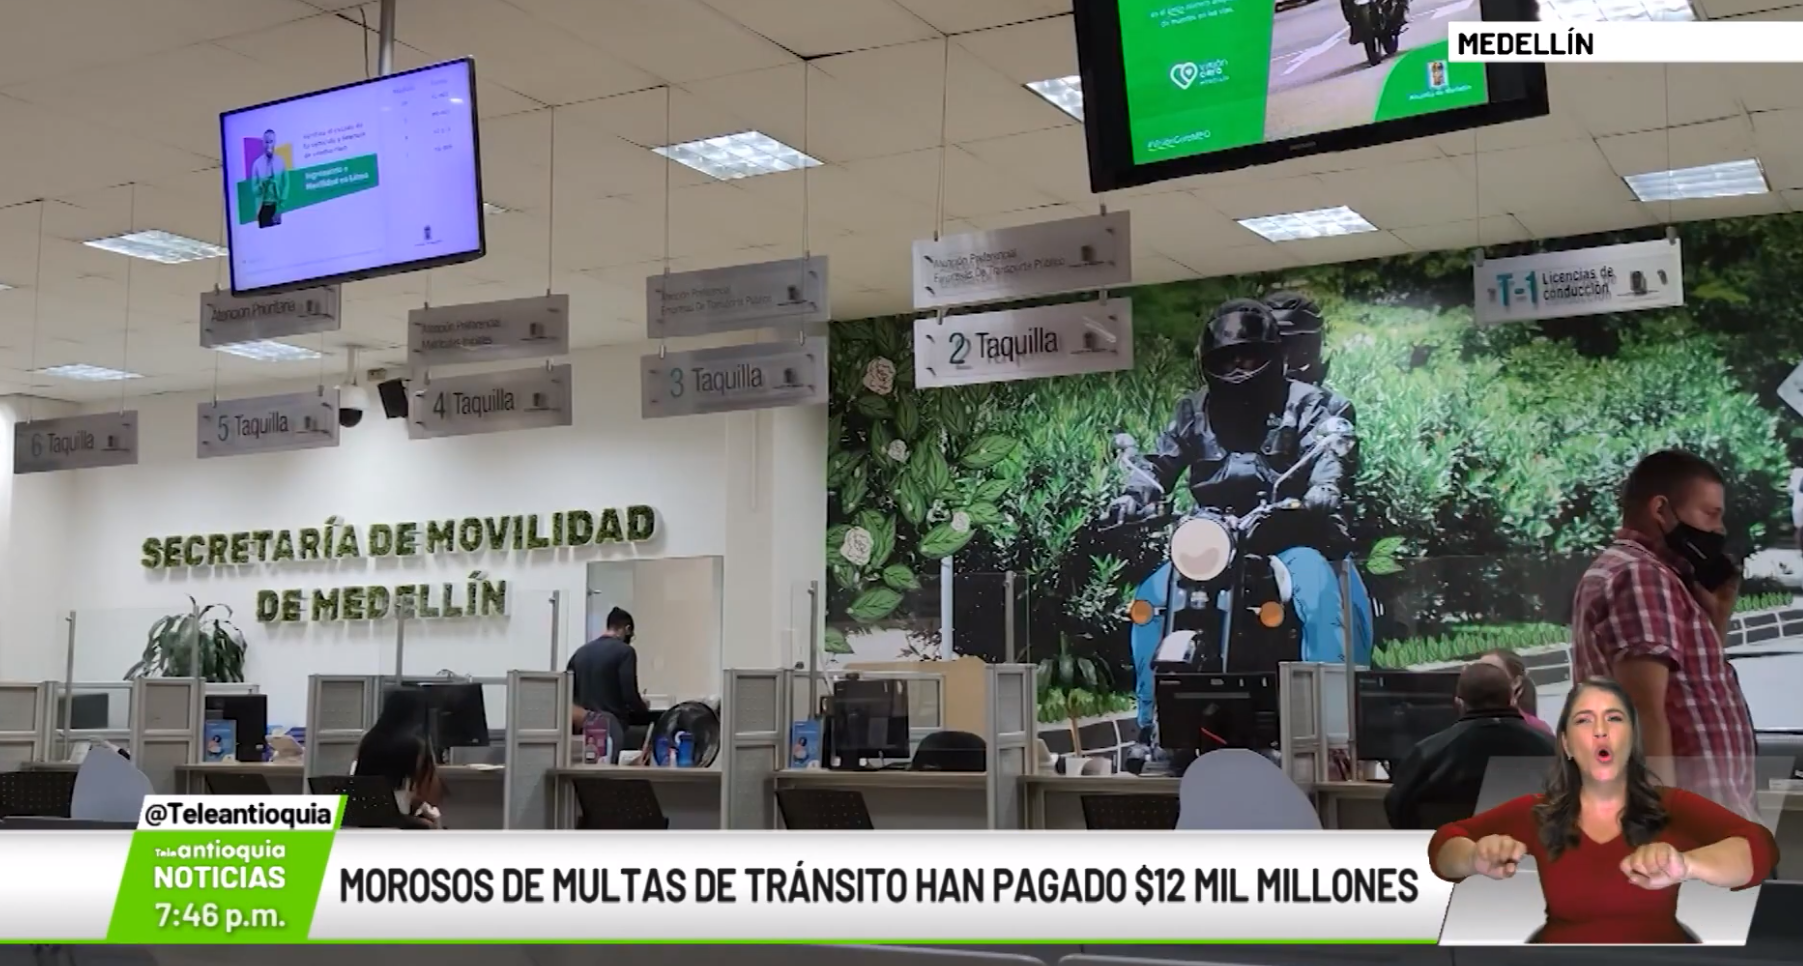 Morosos de multas de tránsito han pagado 12 mil millones de pesos